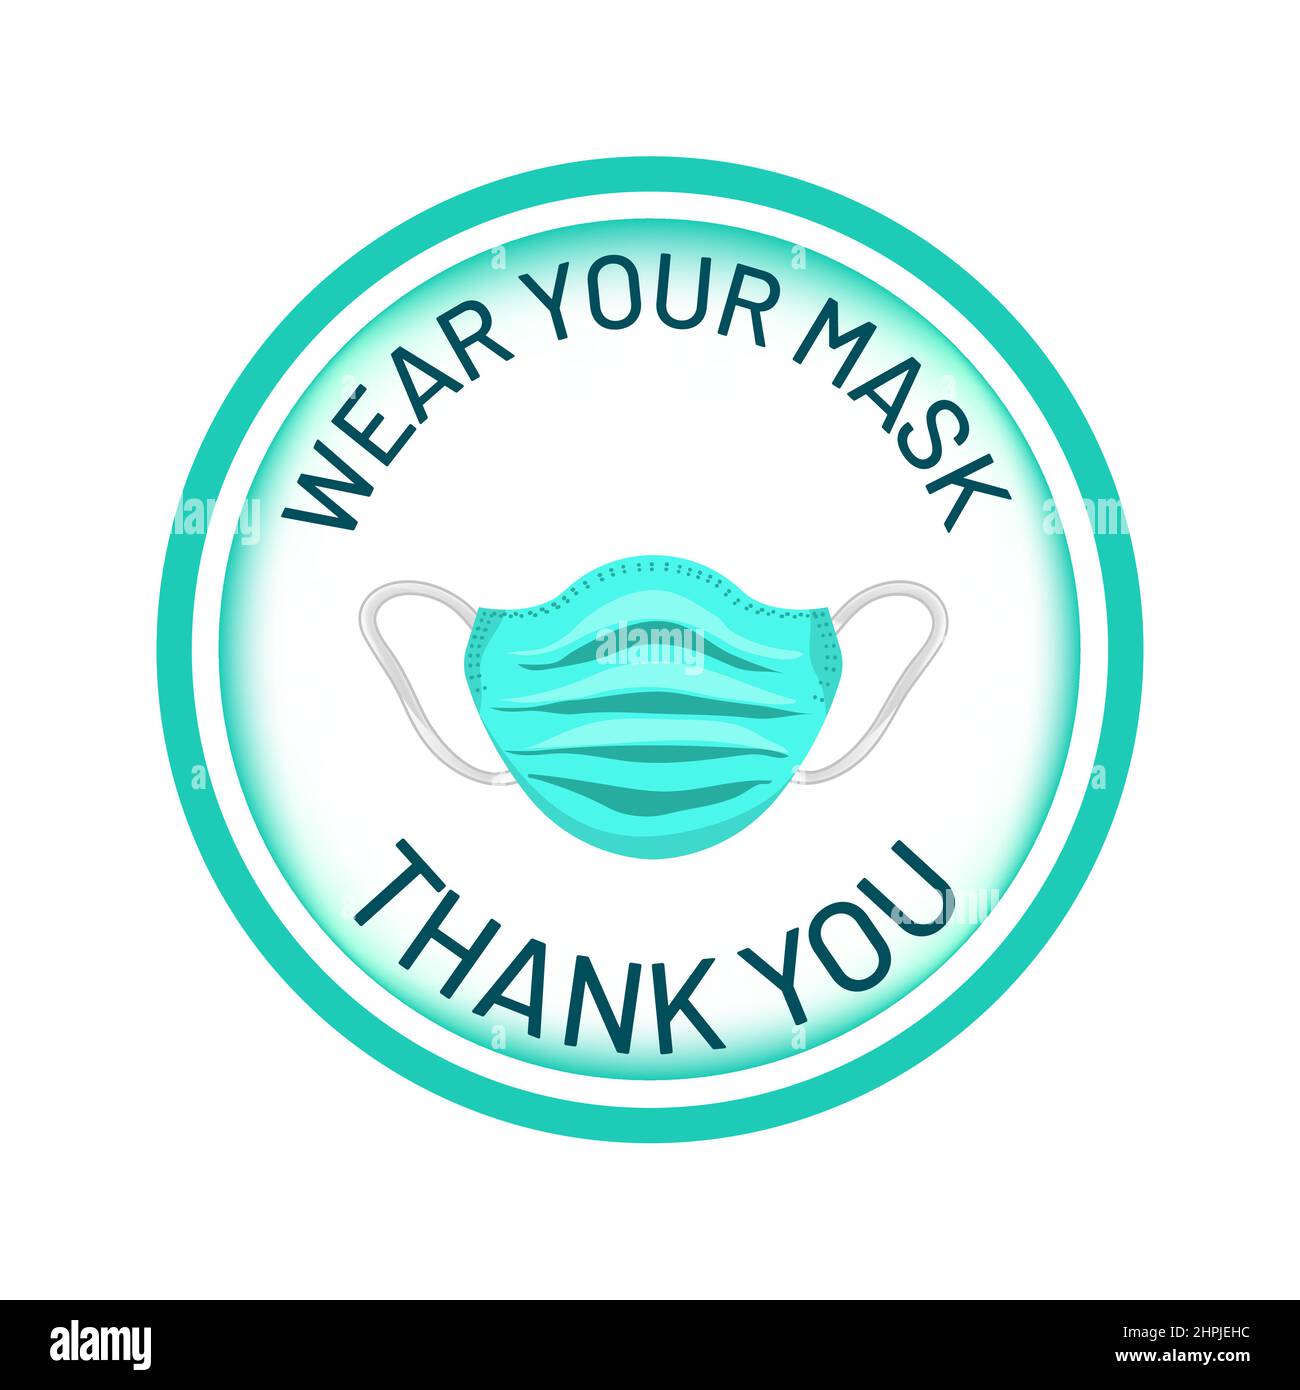 Tragen Sie Ihre Maske, Vielen Dank, Willkommensnachricht vor der Haustür, Erinnerungszeichen, um Gesichtsmaske zu verwenden und sich und andere zu schützen, Rat, Anweisung Stock Vektor